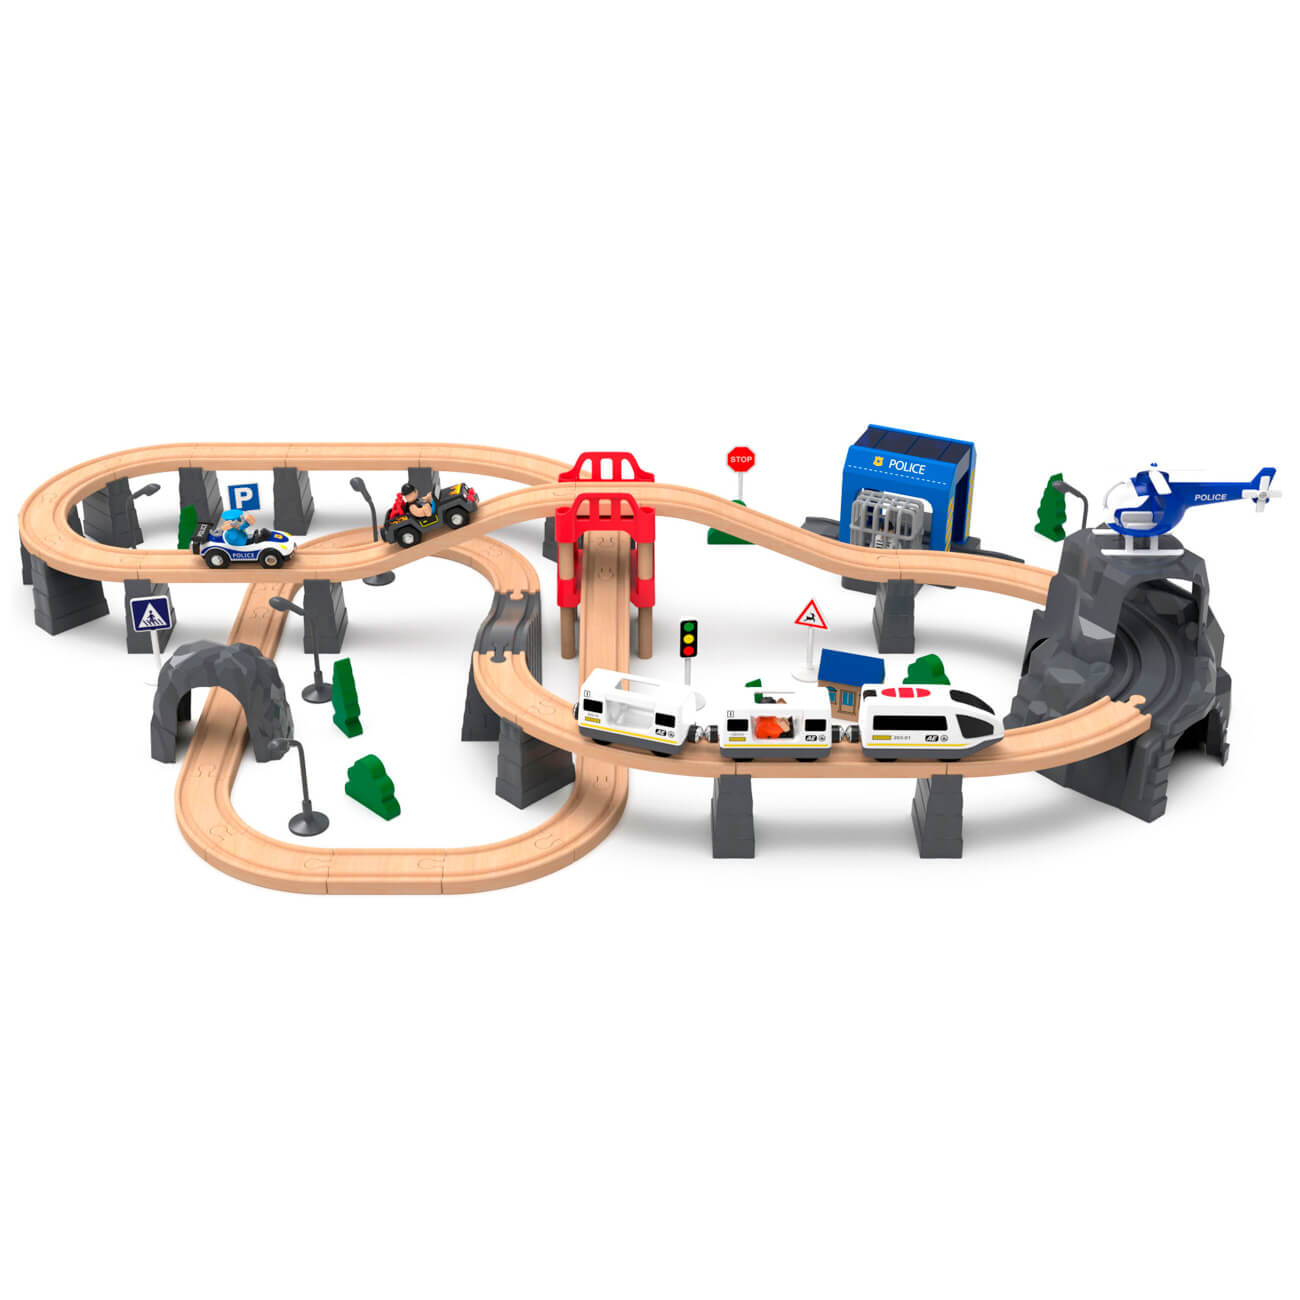 Железная дорога игрушечная, 98 см, дерево/пластик, Электропоезд, Game rail что я видел железная дорога